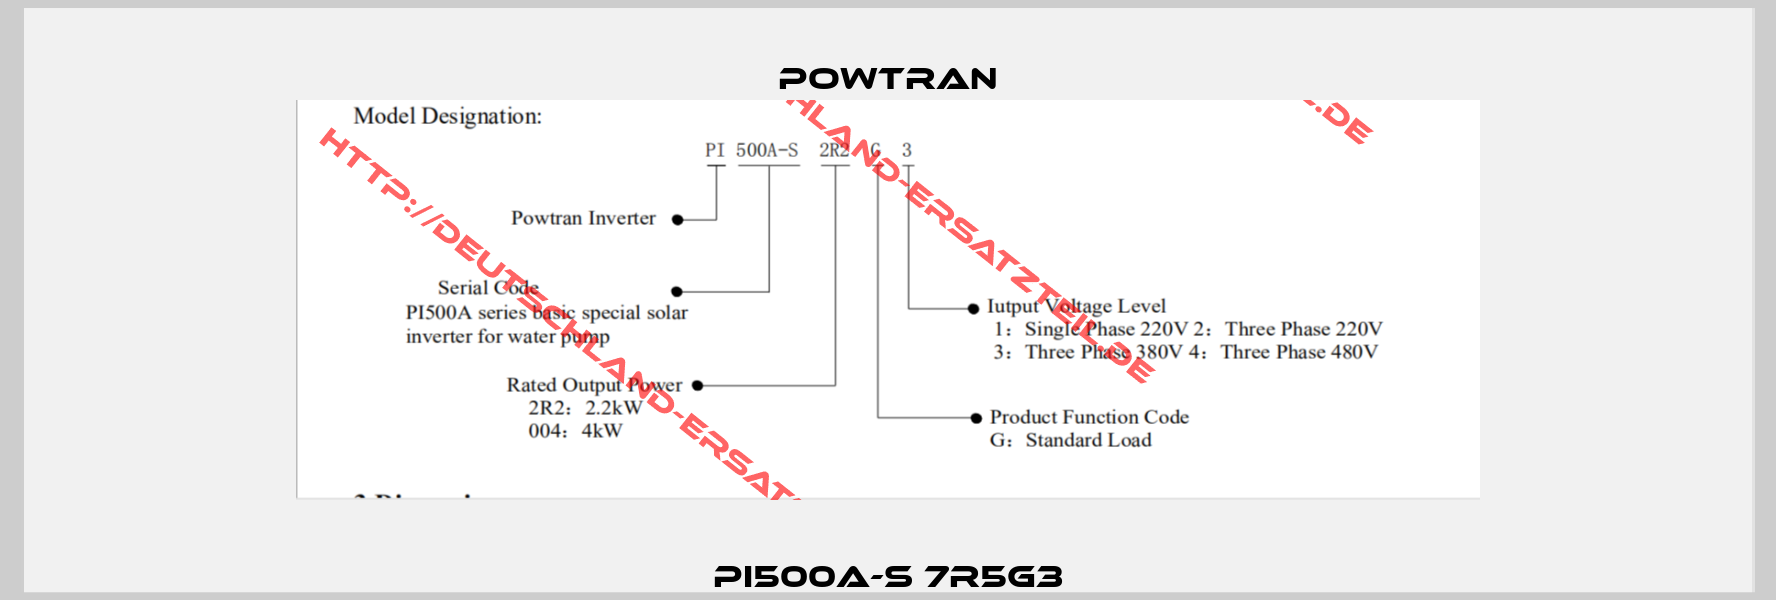 PI500A-S 7R5G3-1